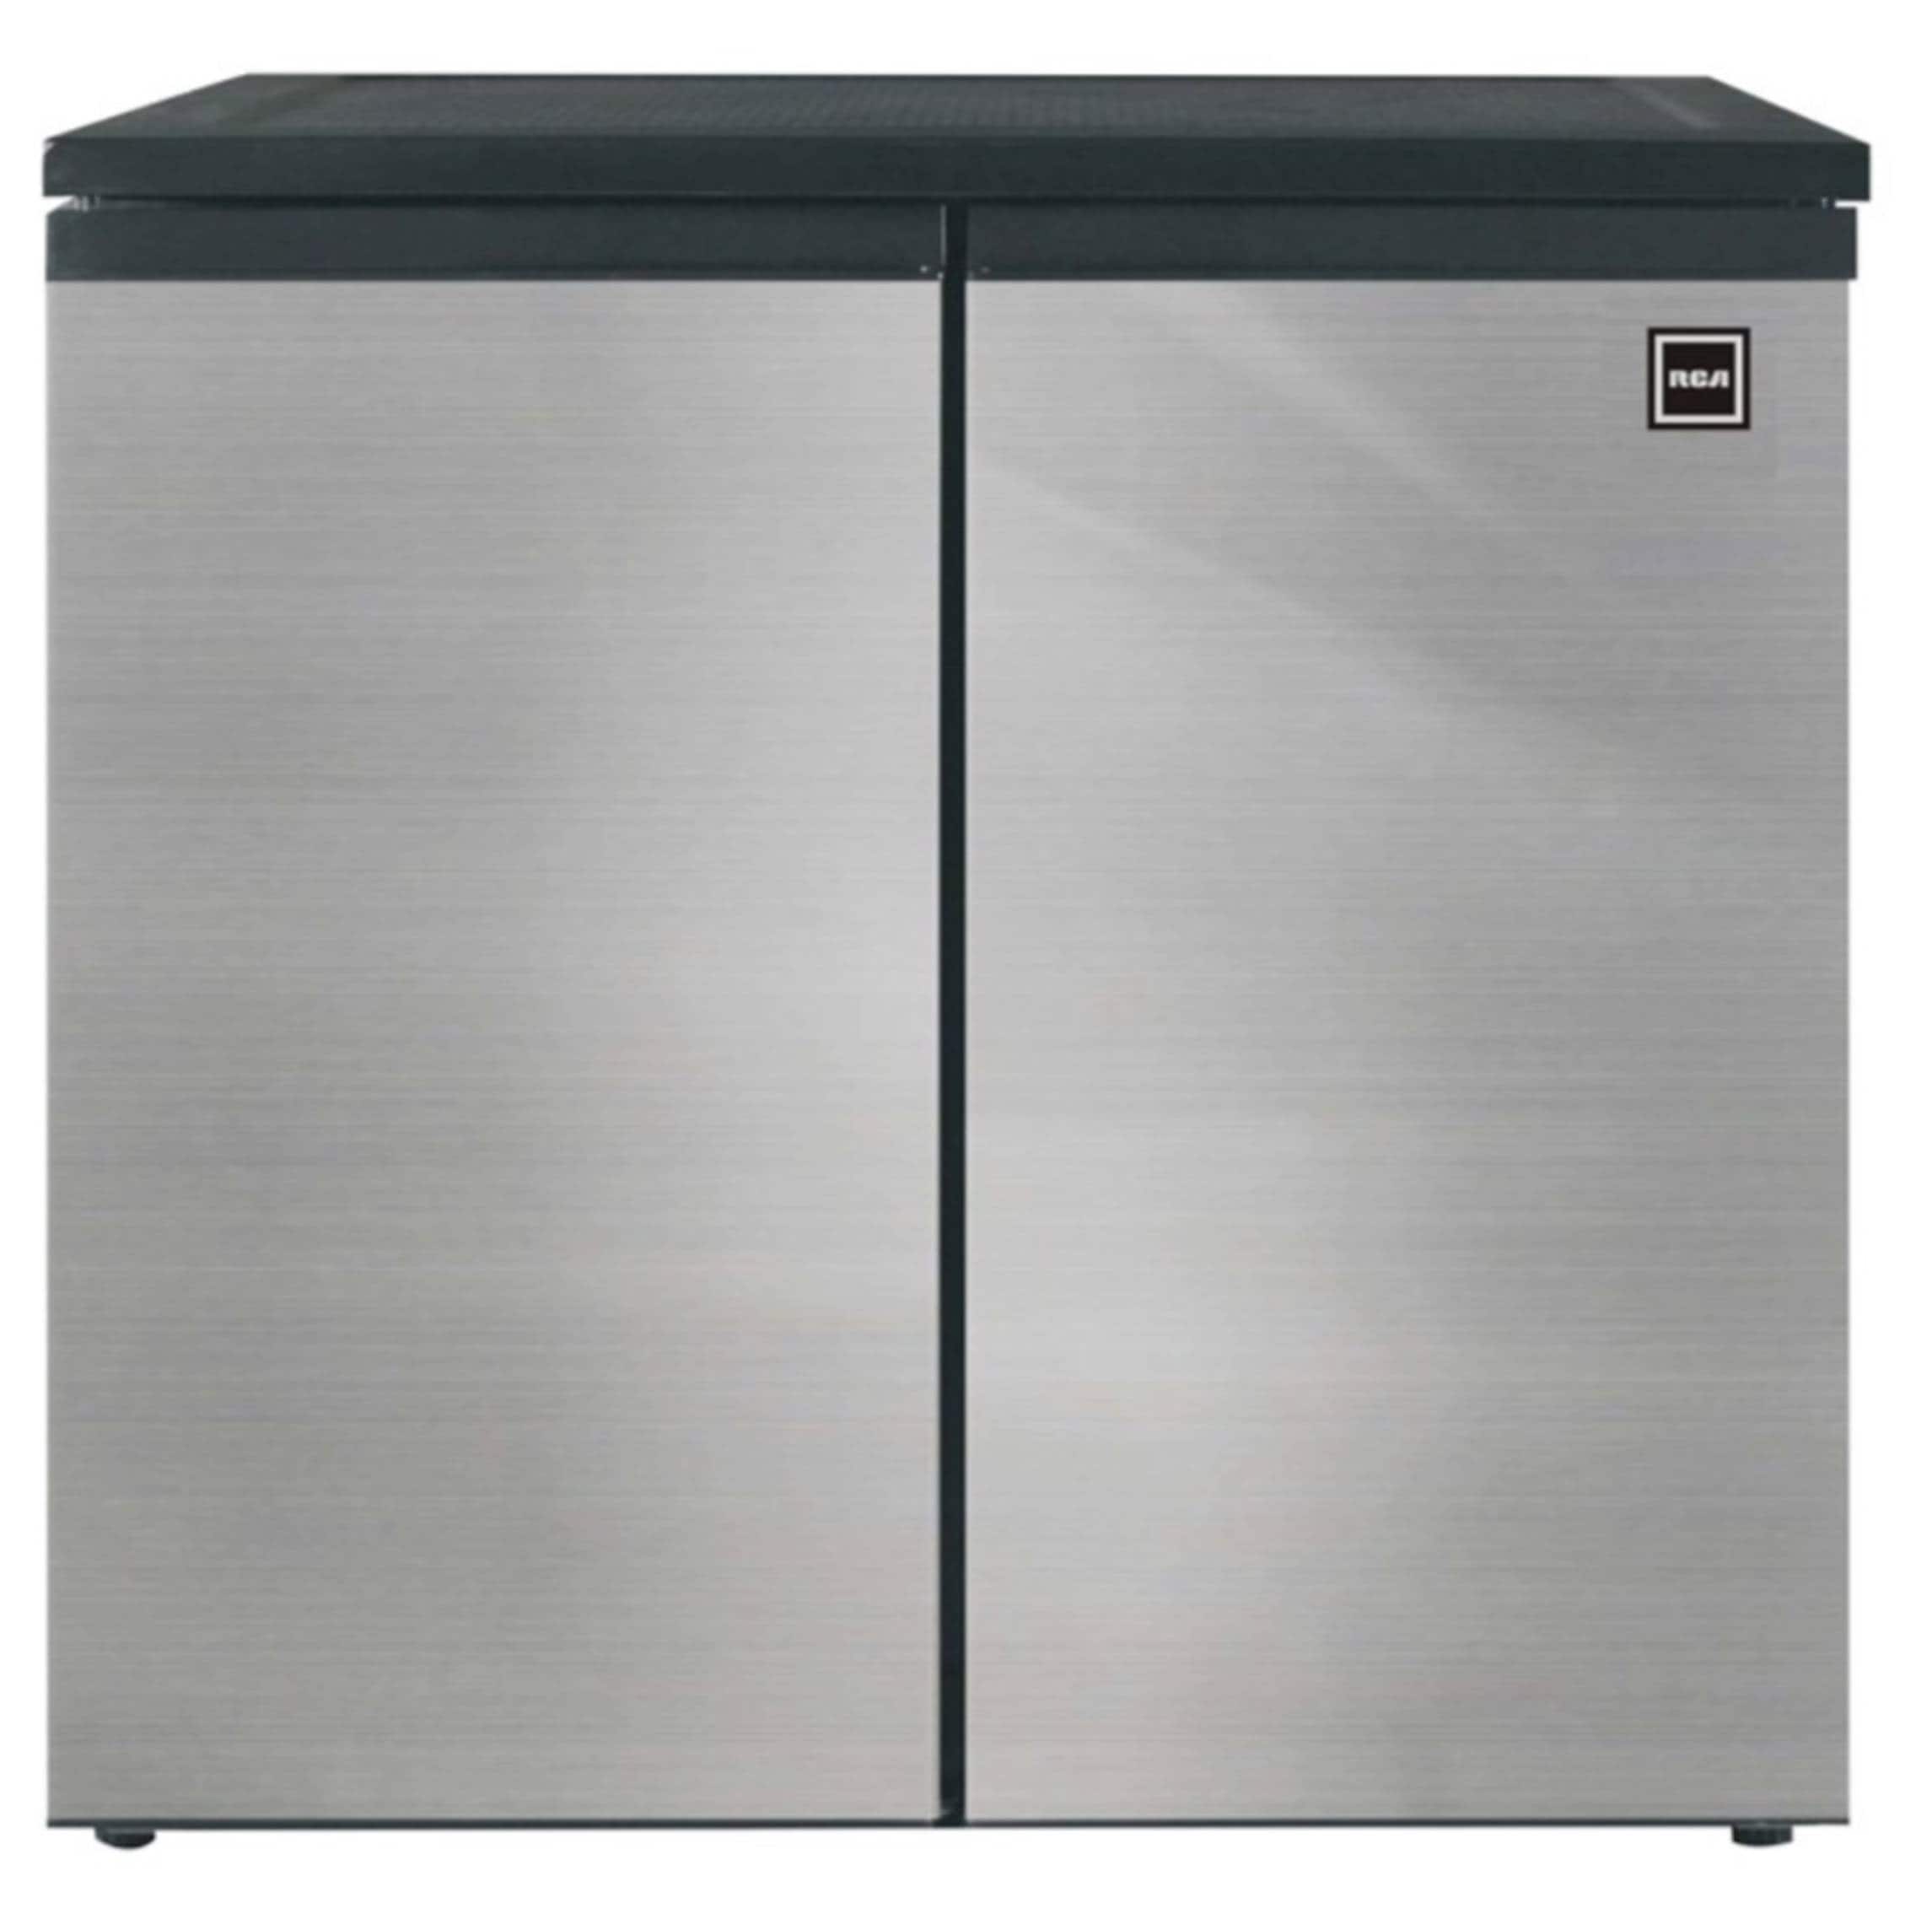 RCA - 2-Door - Compact Refrigerator/Freezer - Reversible Doors